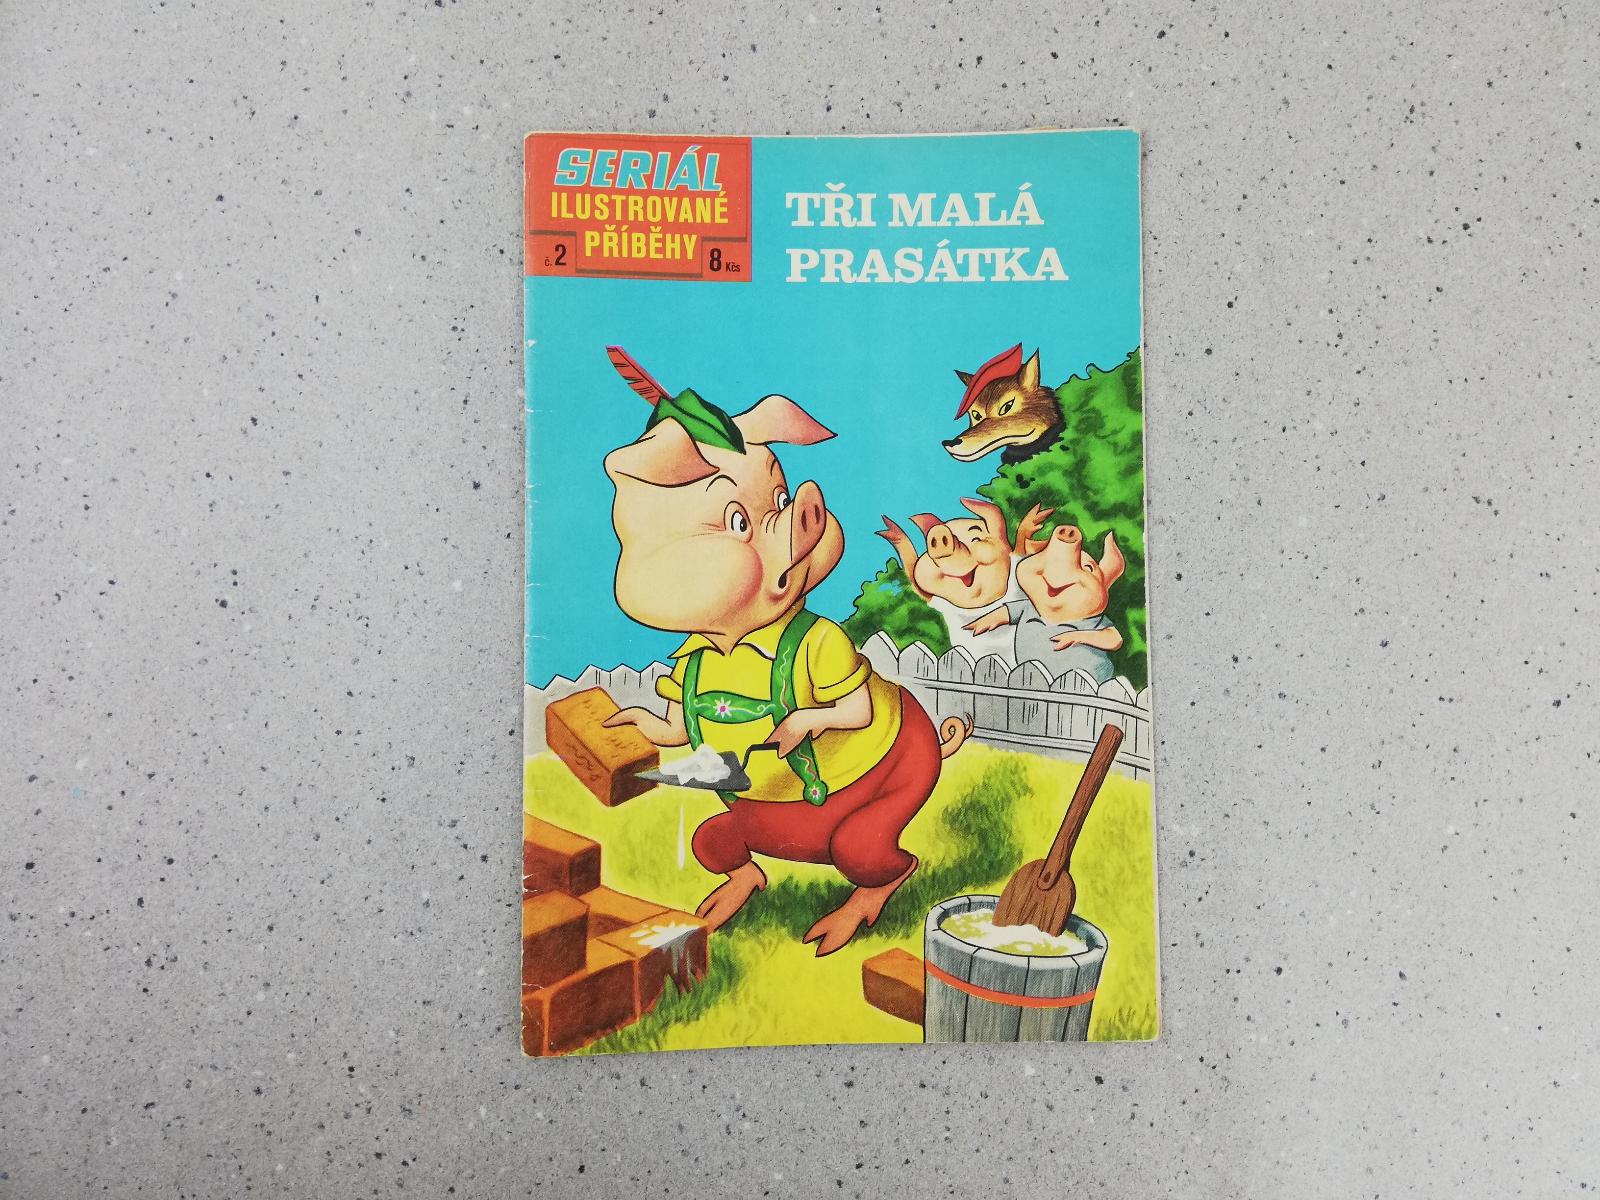 TRI MALÁ PRASIATKA - Ilustrované príbehy č. 2 - 1969 - komiks - Knihy a časopisy